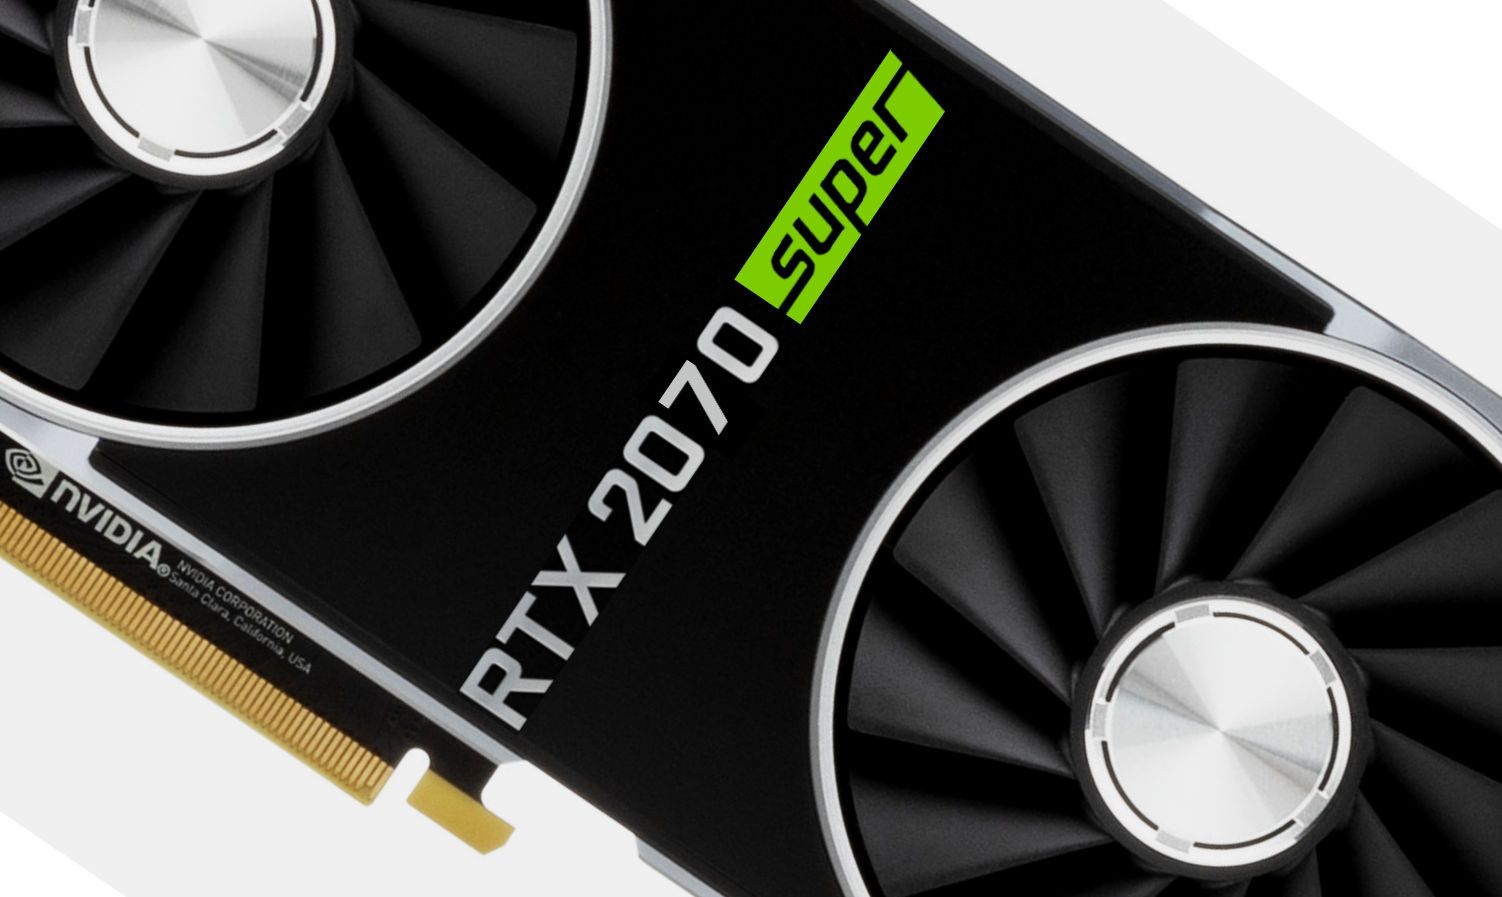 GeForce RTX 2070 Super vs Radeon RX 5700 XT